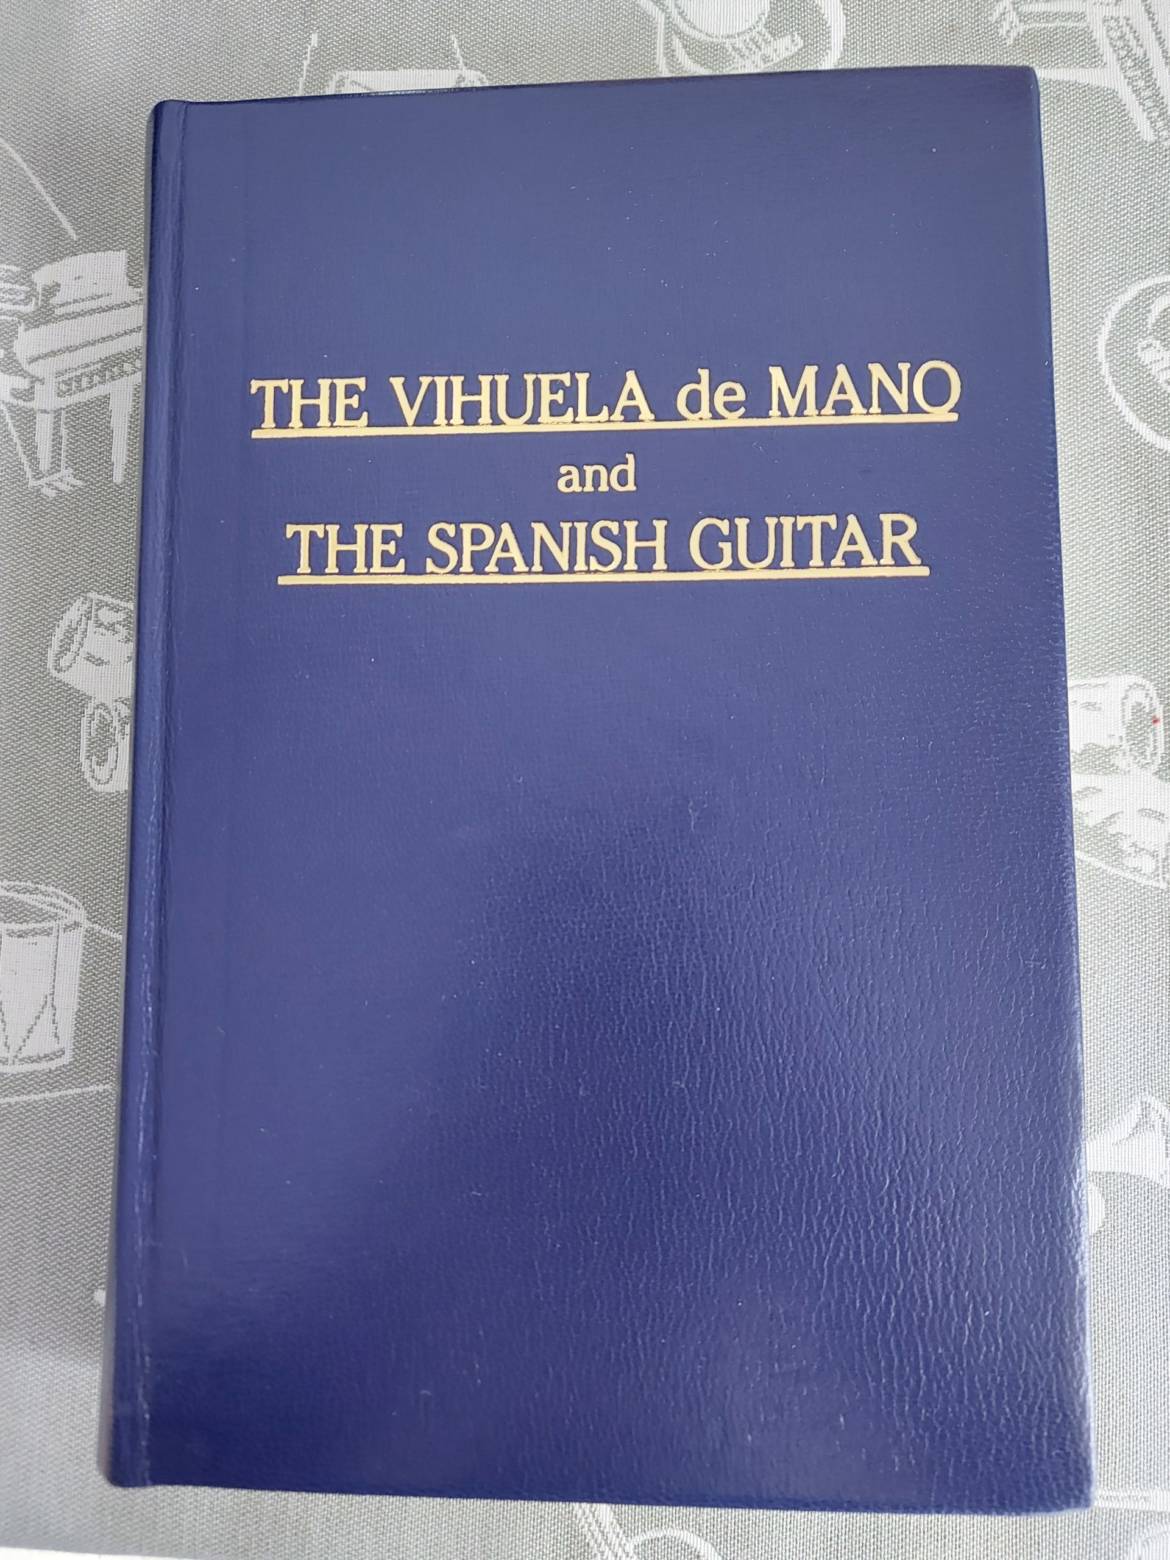 Diccionario de Guitarreros. The Vihuela de Mano and the Spanish Guitar. (Cuero)